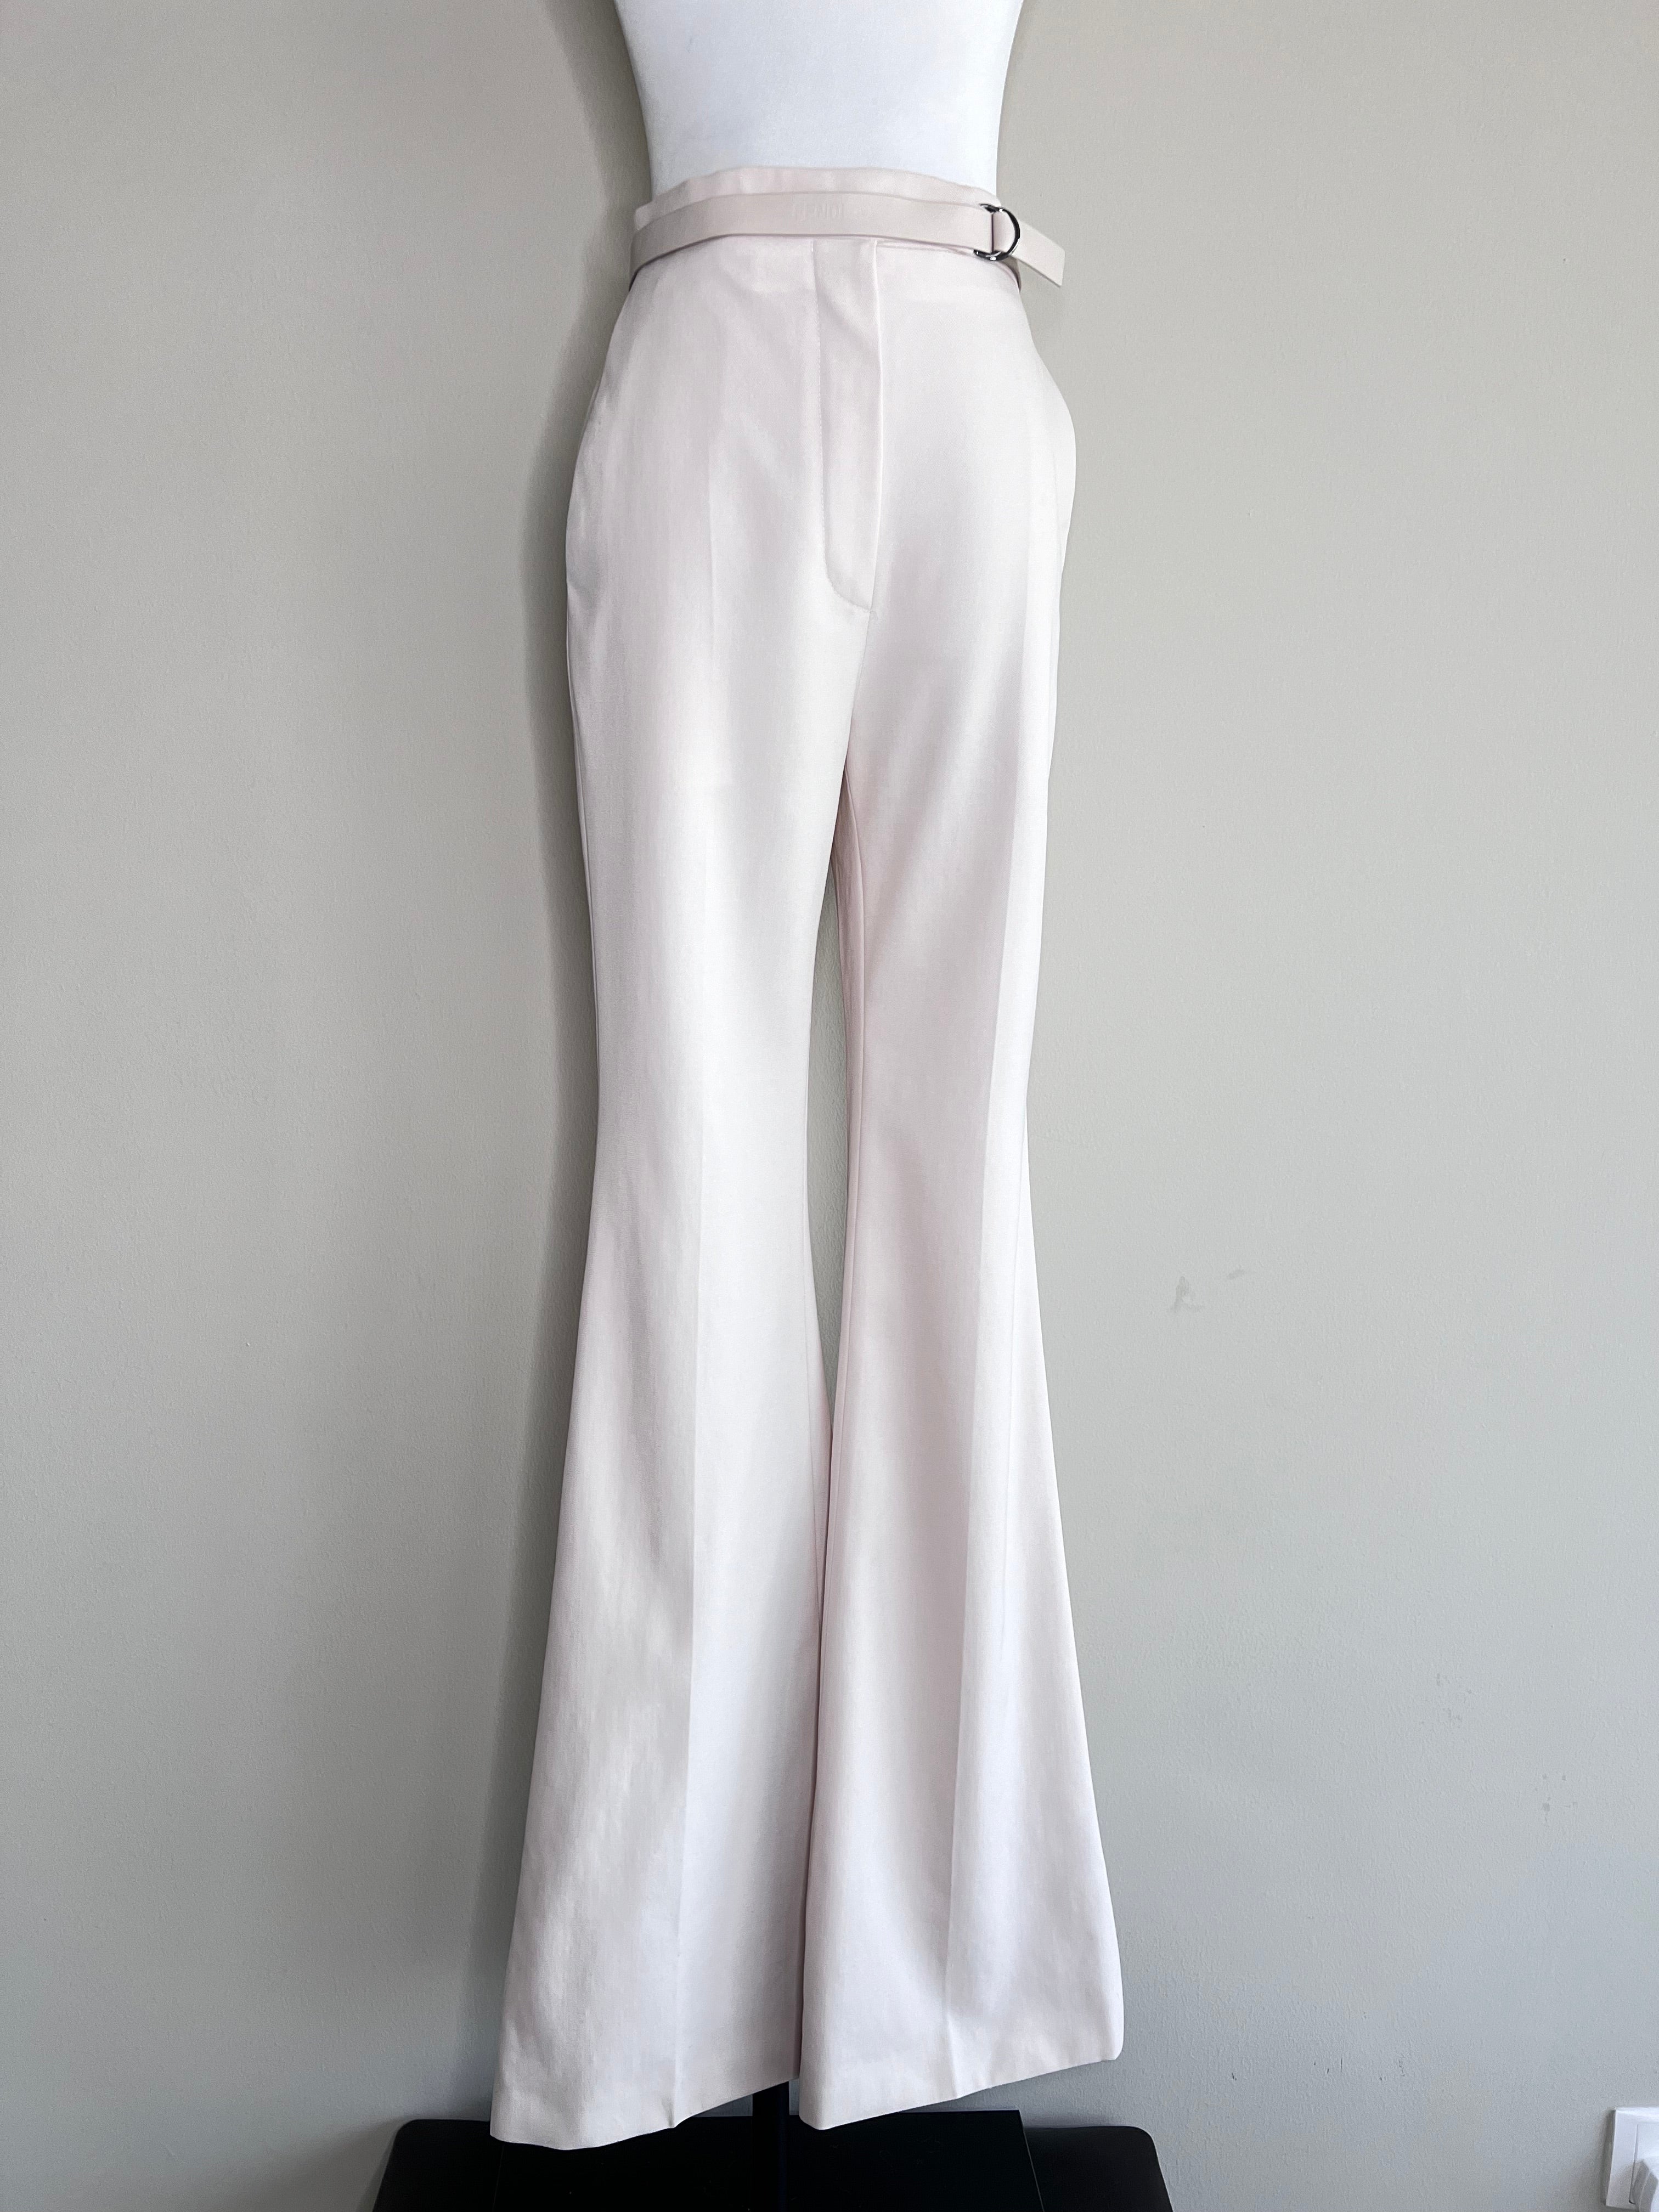 Light pink high waist pants - FENDI